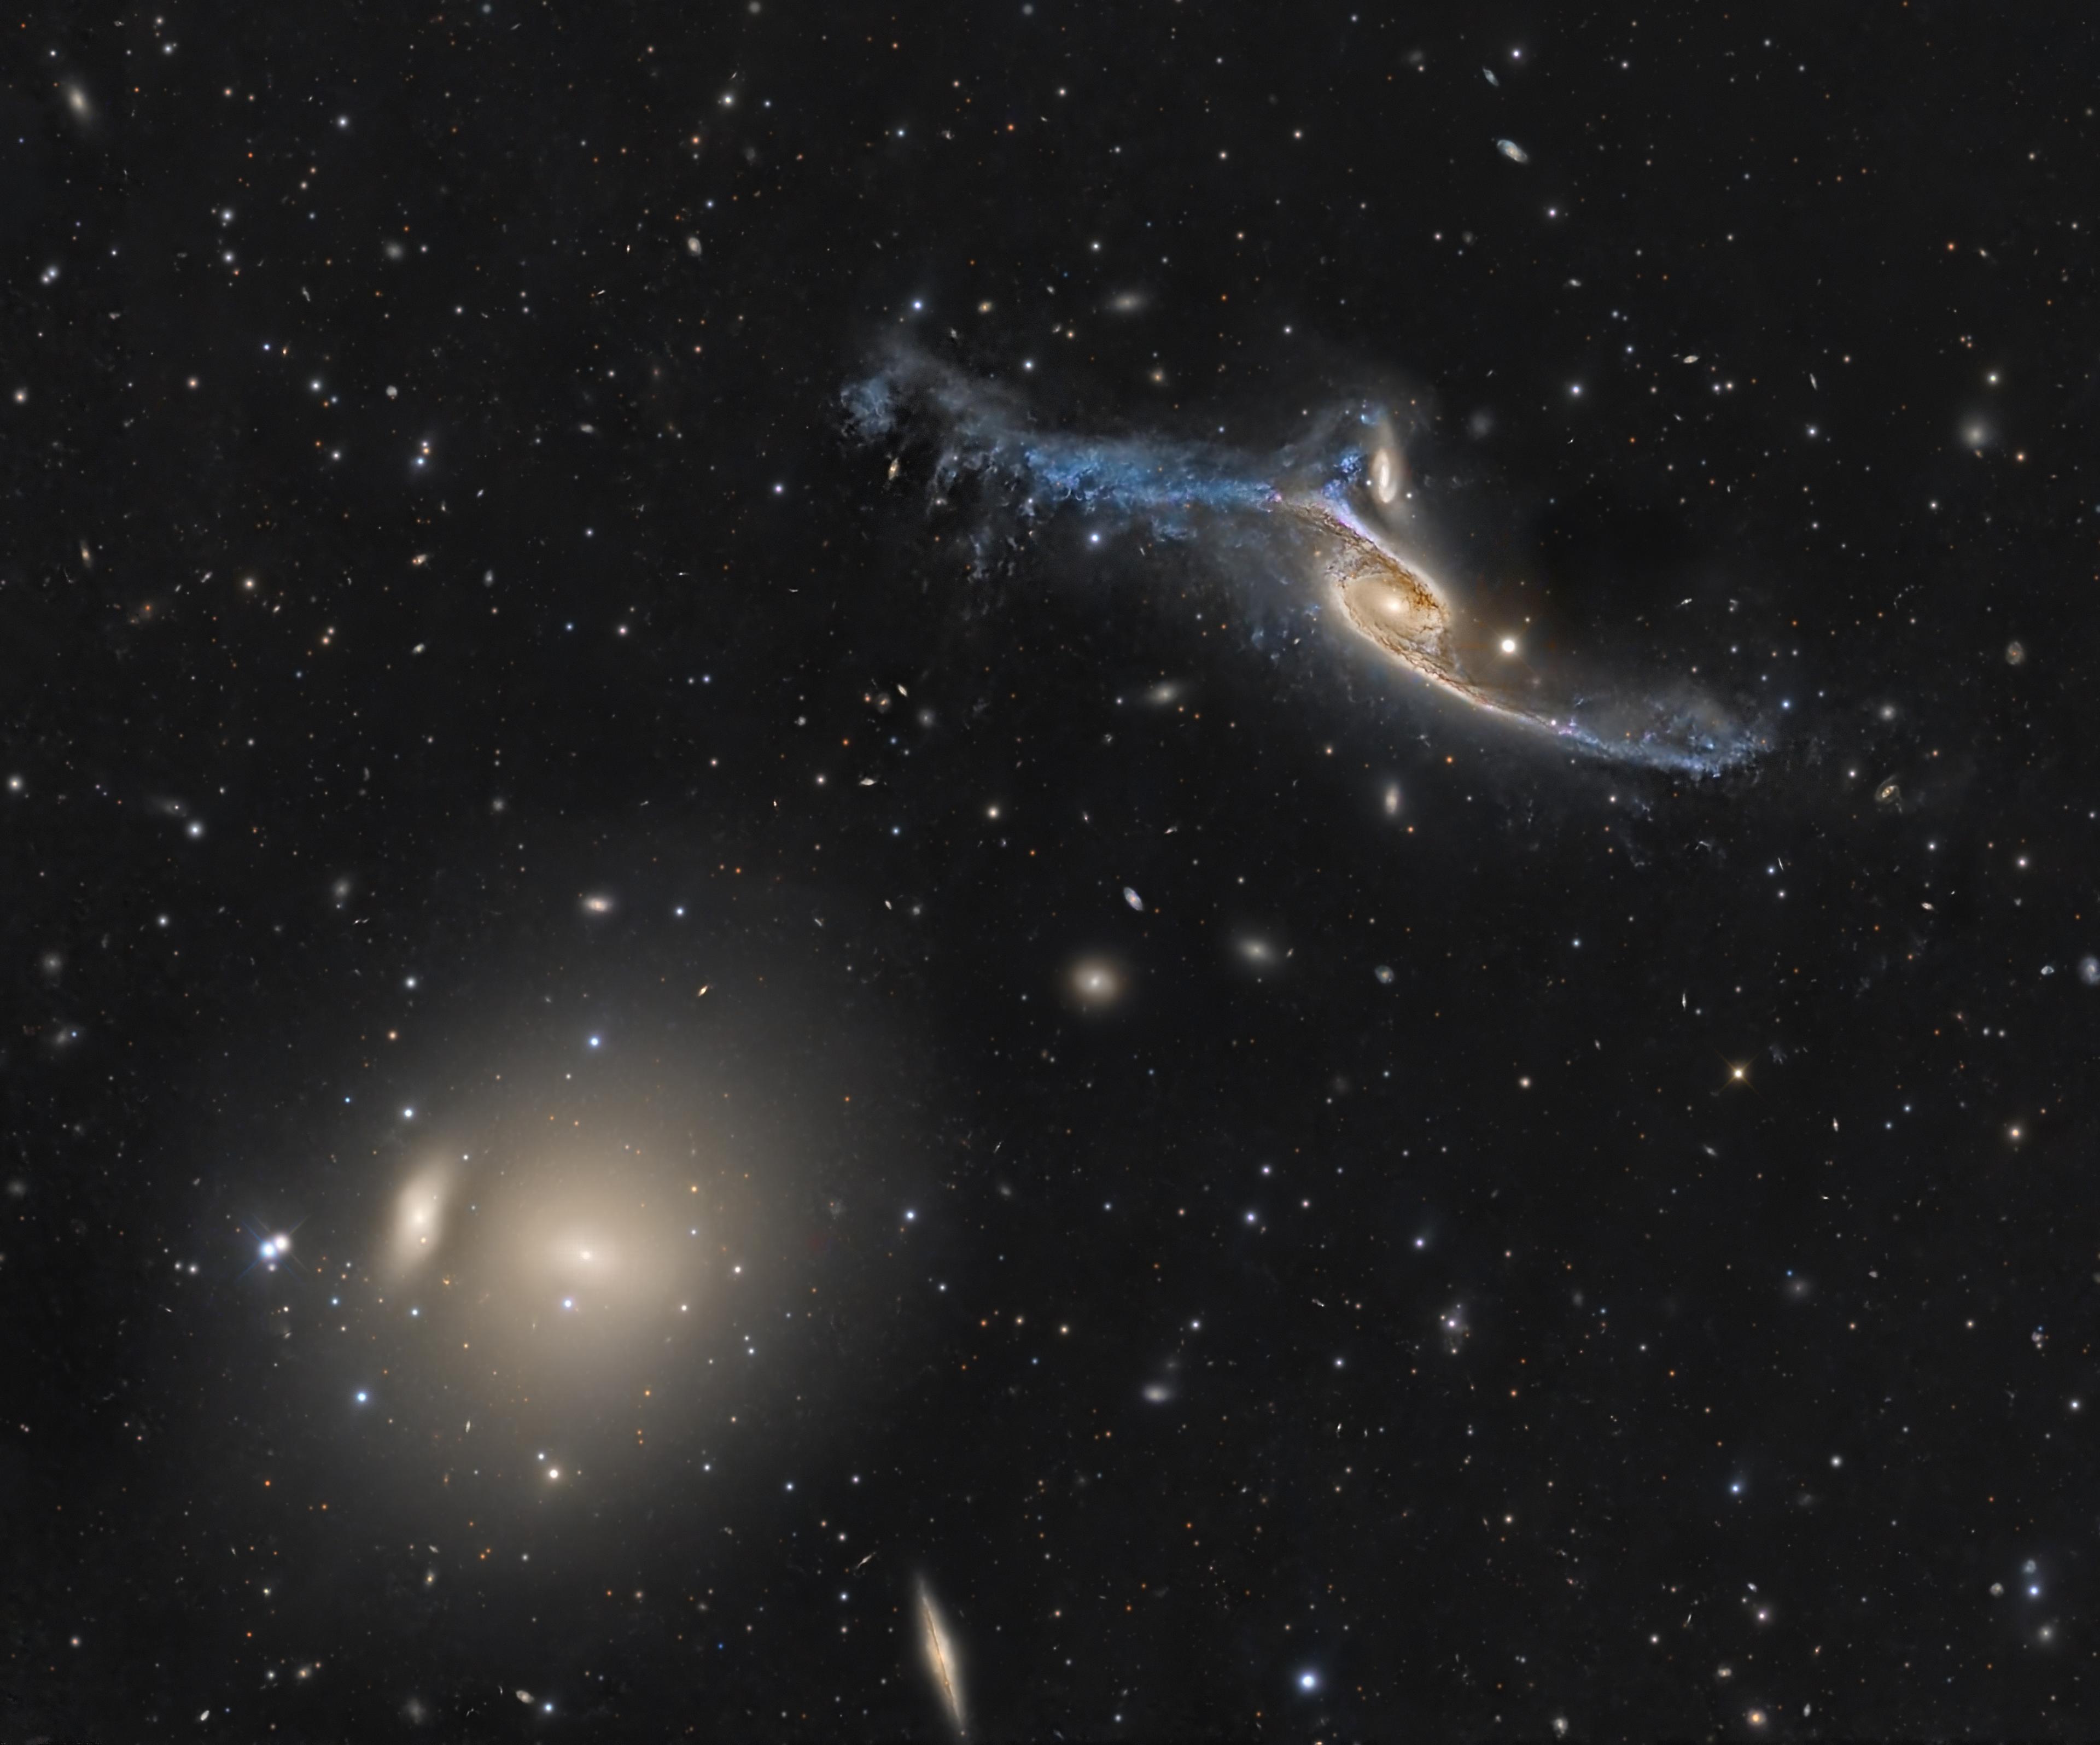 مجرّة غريبة الشكل تظهر بنواة مصفرّة وذراعين ممتدّين كجناحين وعلى أسفل اليسار تظهر مجرّة اهليلجيّة صفراء ساطعة في حين تتناثر مجرّات وأجرام أخرى عبر الصورة